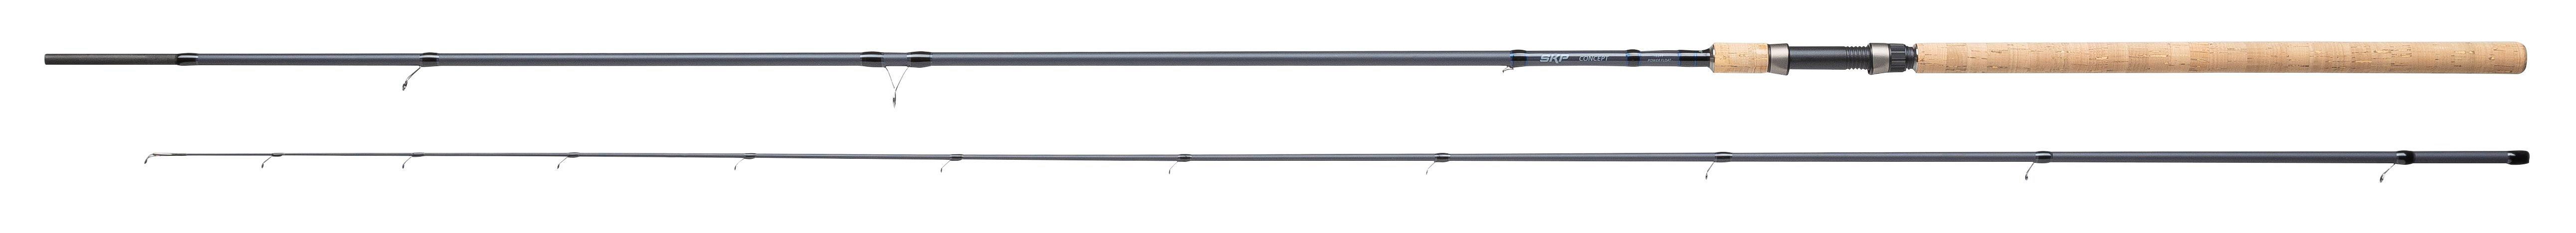 Shakespeare SKP Concept Float Pen Rod 12ft (3.60m)